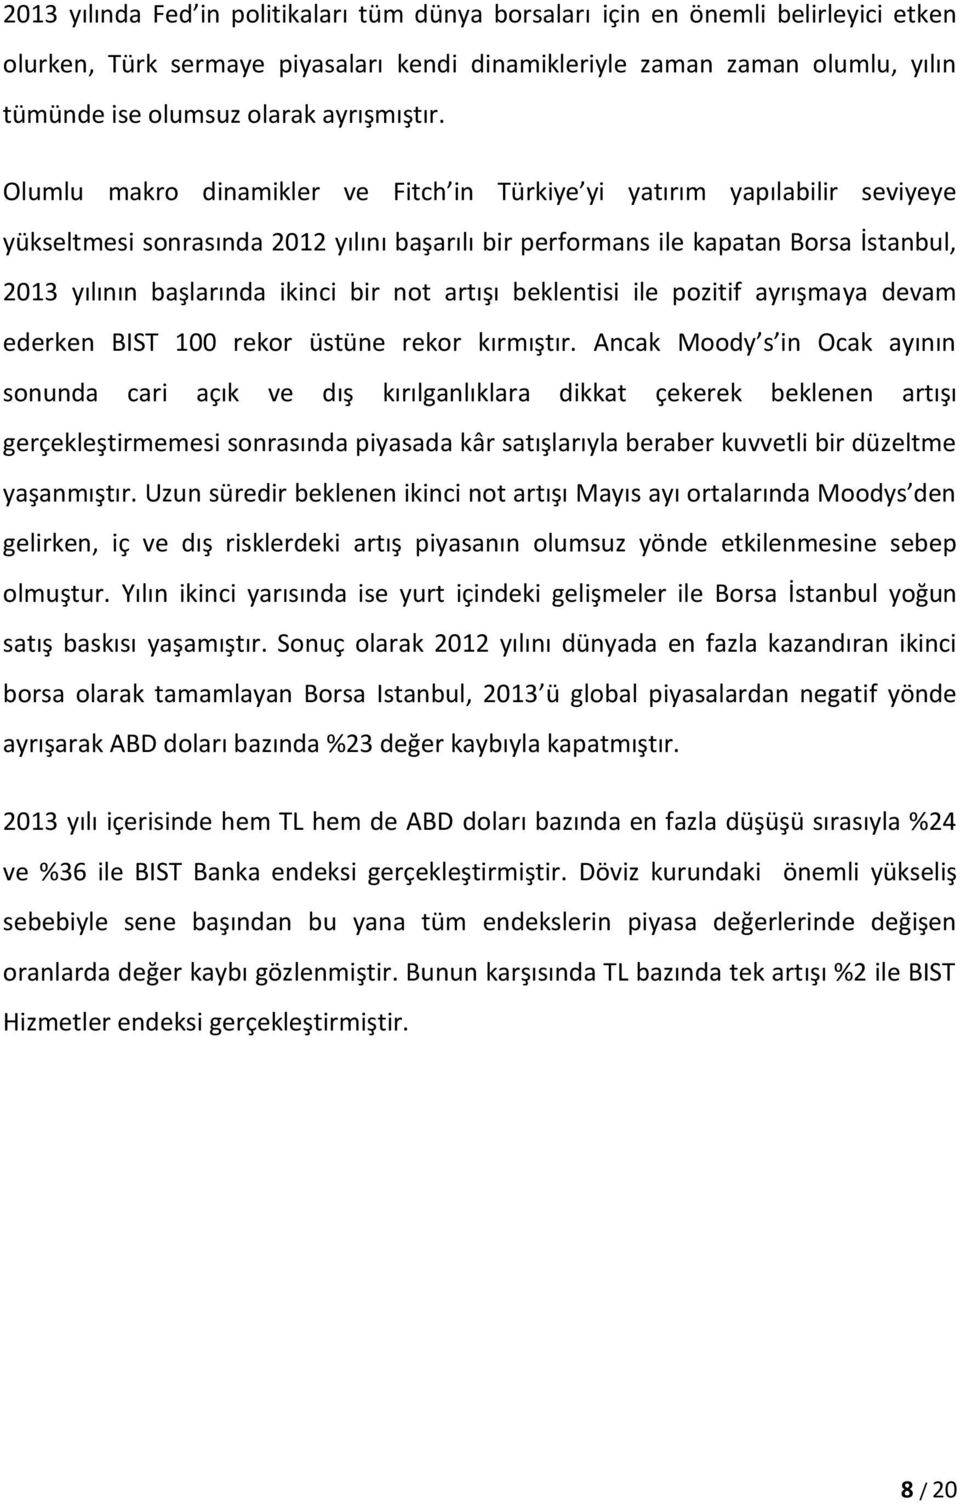 Olumlu makro dinamikler ve Fitch in Türkiye yi yatırım yapılabilir seviyeye yükseltmesi sonrasında 2012 yılını başarılı bir performans ile kapatan Borsa İstanbul, 2013 yılının başlarında ikinci bir